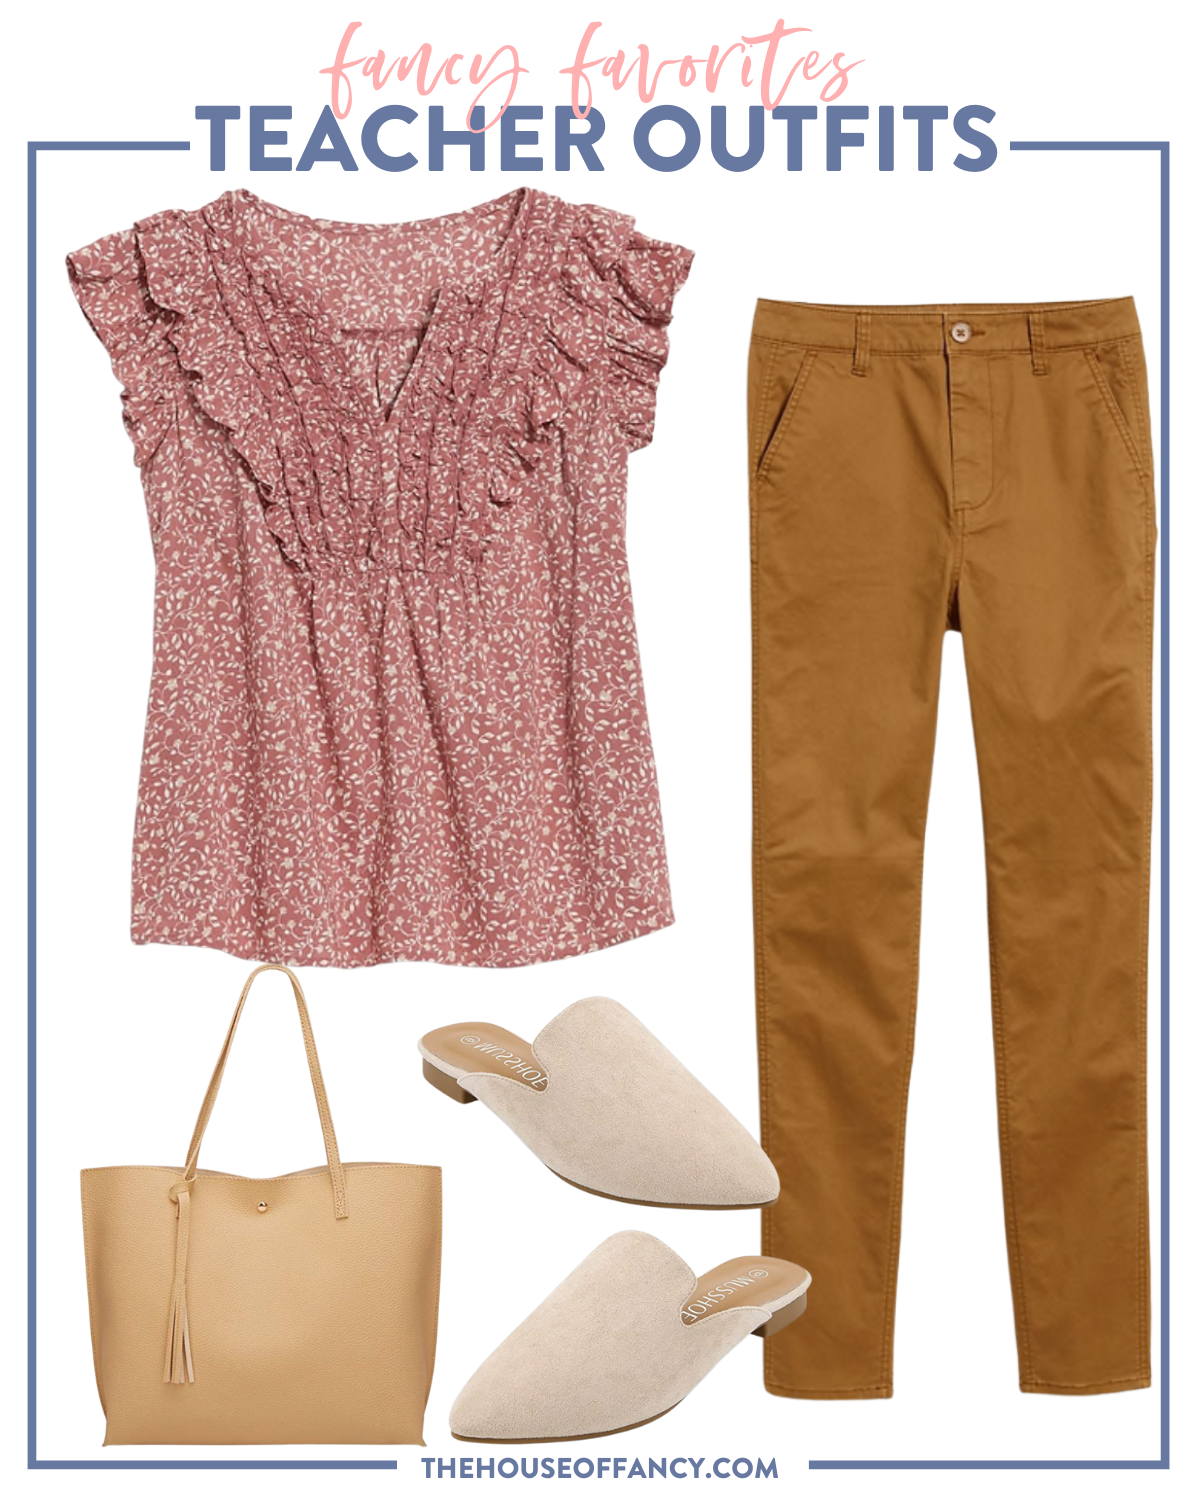 10 Easy Teacher Outfits